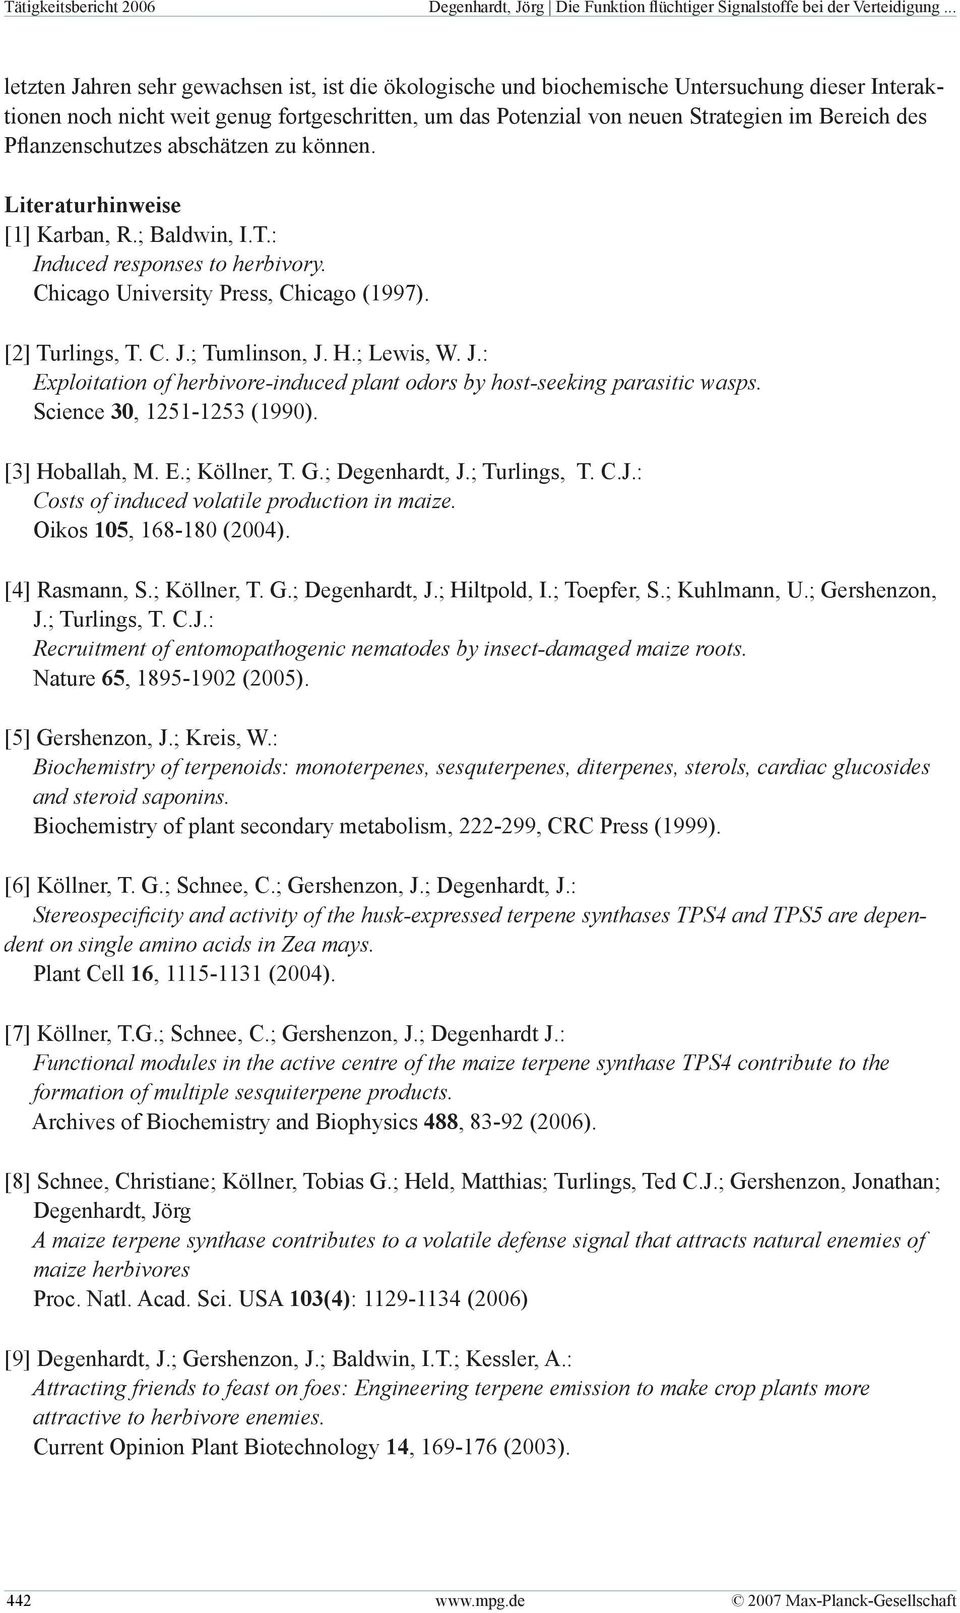 des Pflanzenschutzes abschätzen zu können. Literaturhinweise [1] Karban, R.; Baldwin, I.T.: Induced responses to herbivory. Chicago University Press, Chicago (1997). [2] Turlings, T. C. J.